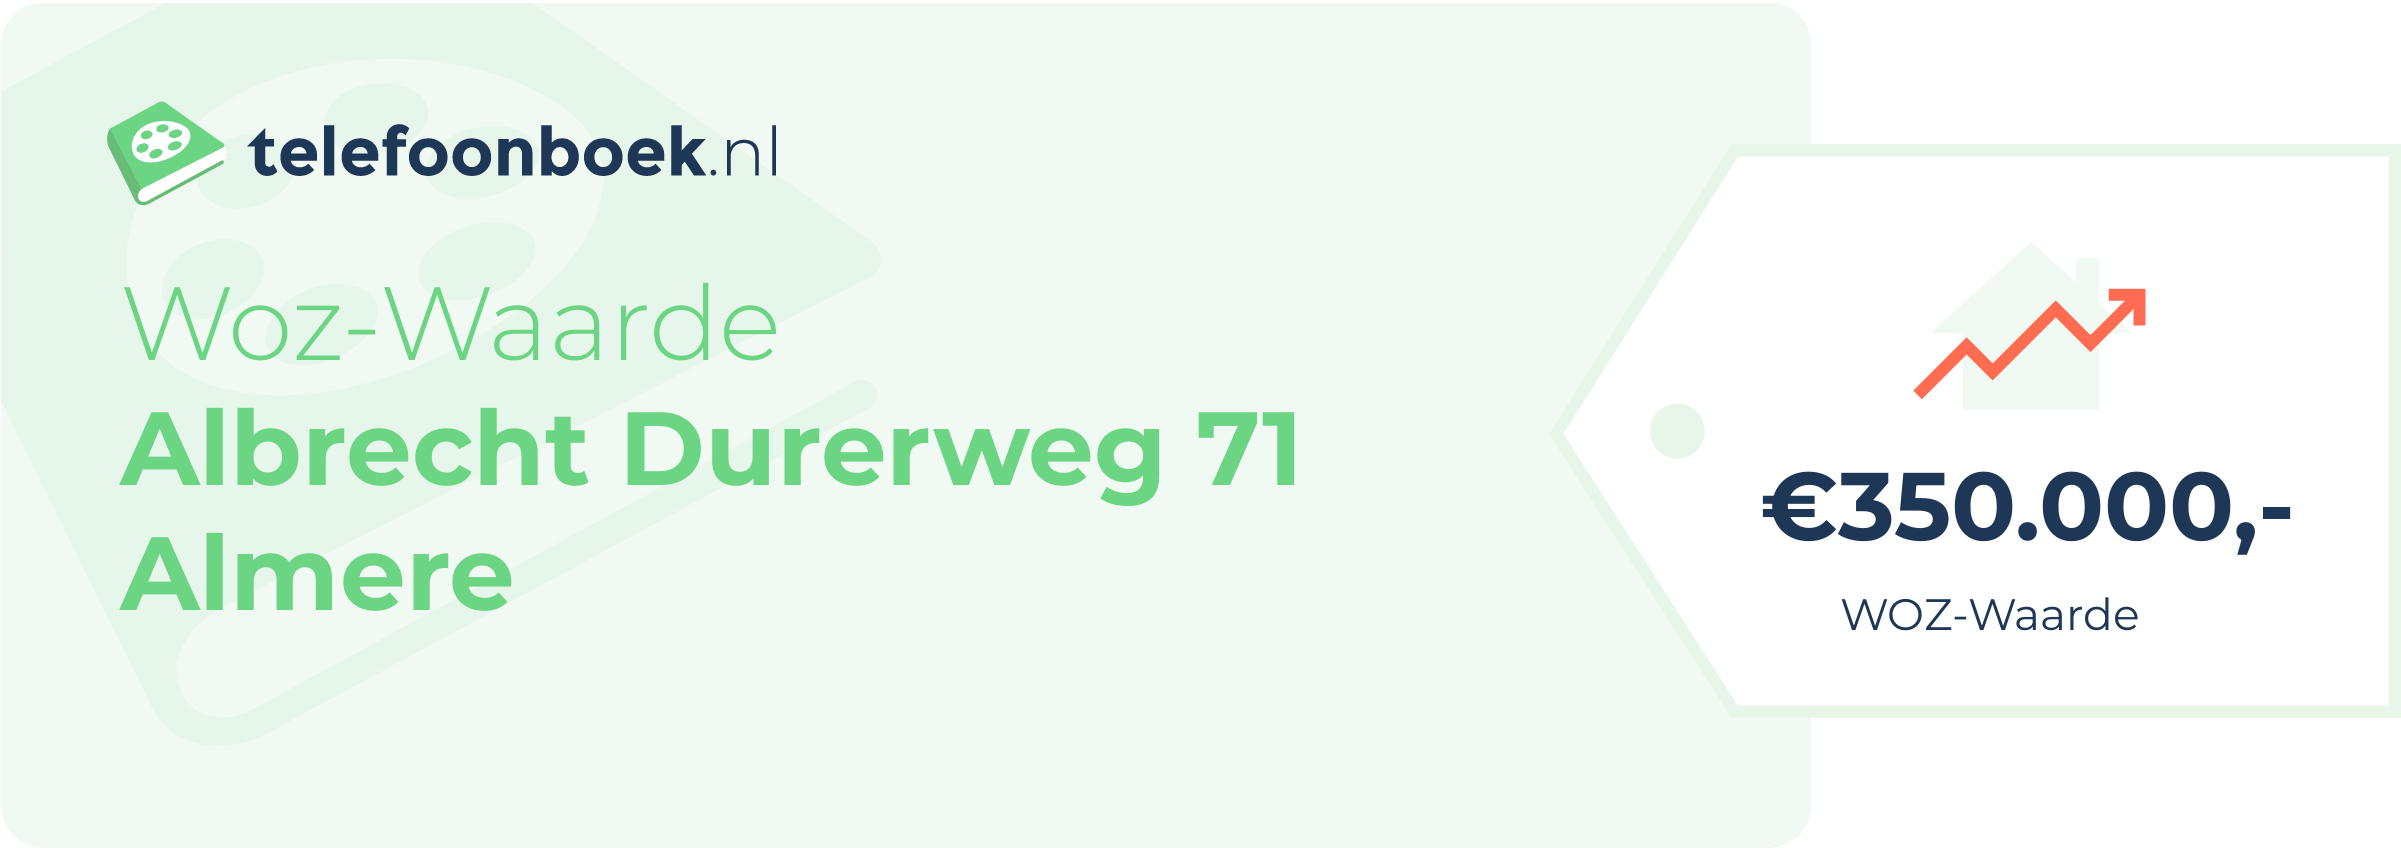 WOZ-waarde Albrecht Durerweg 71 Almere